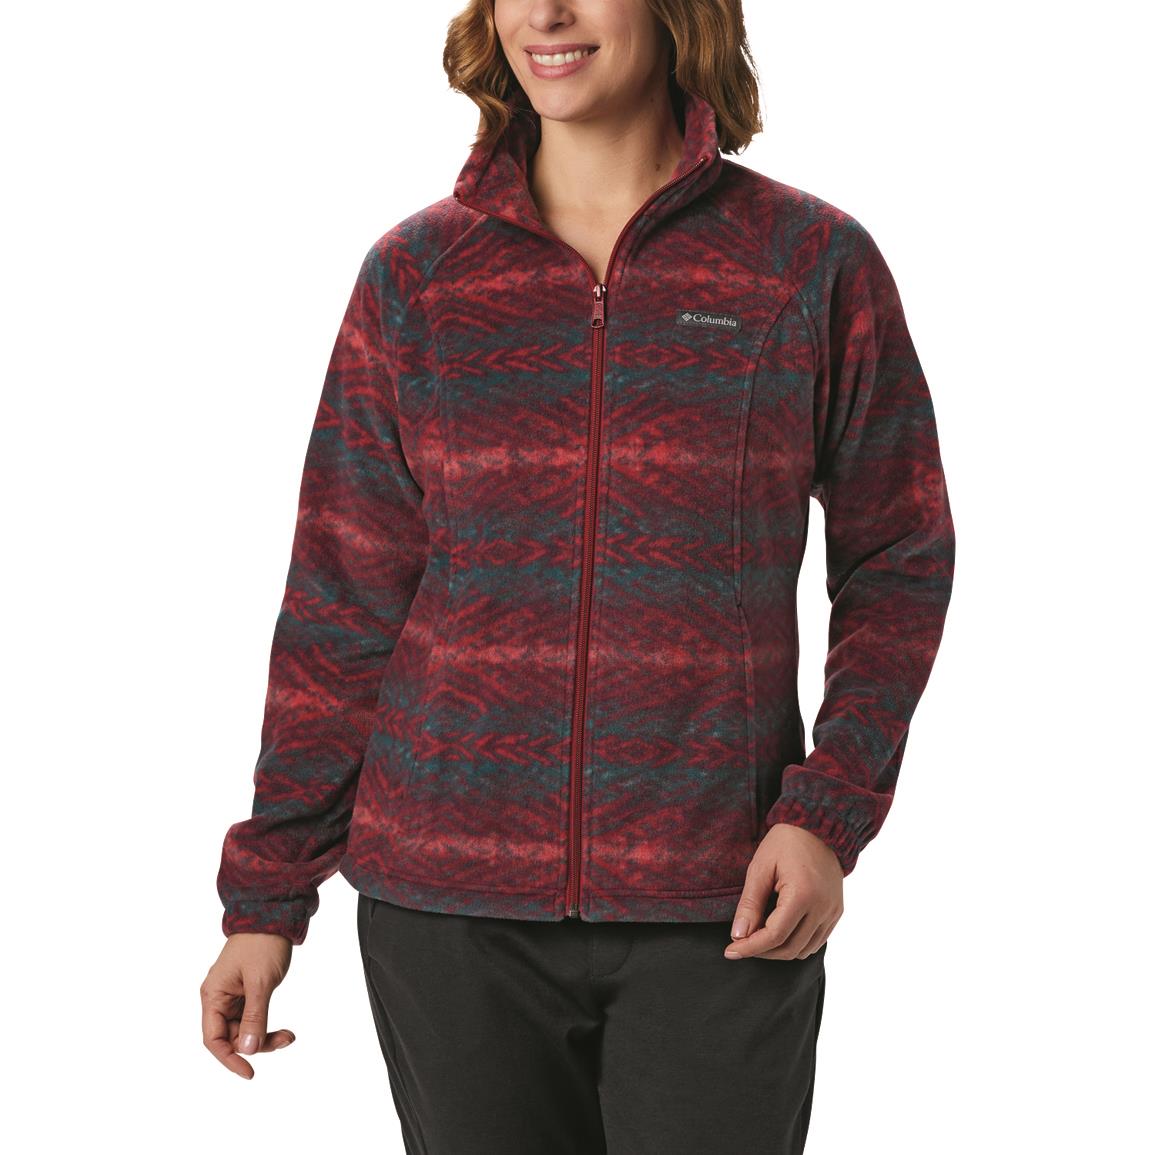 Columbia Women's Benton Springs Print Full Zip Fleece Jacket, Beet Blanket Print